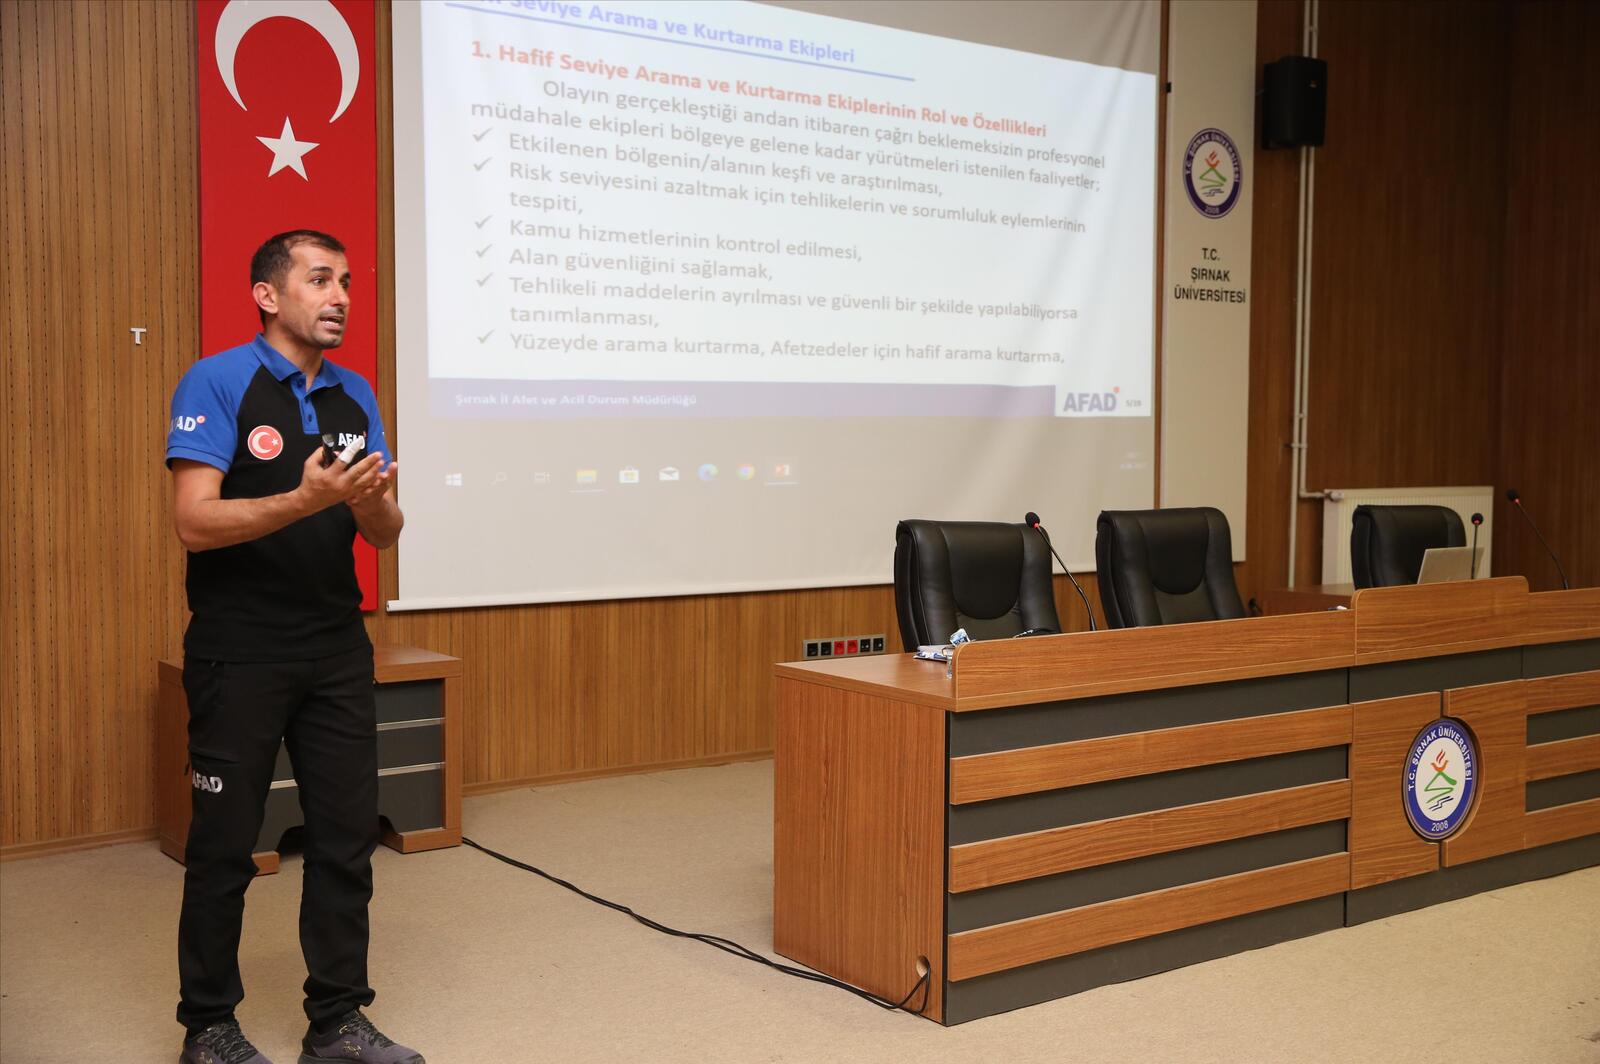 Şırnak Üniversitesinde Arama Kurtarma Ekibi Kuruldu